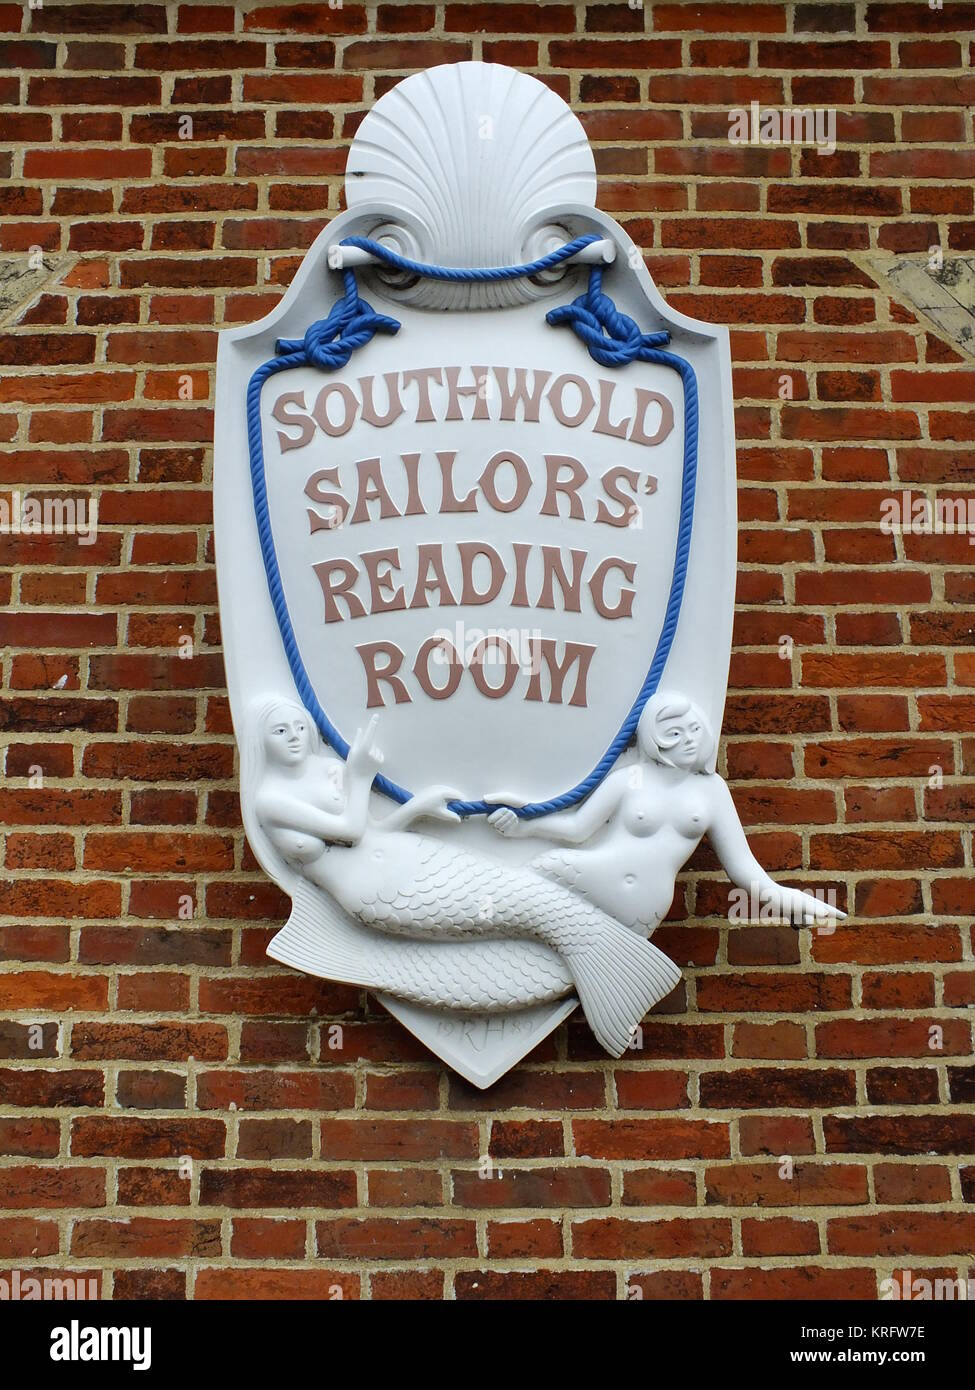 Panneau Southwold Sailors' Reading Room, Southwold, Suffolk. La salle de lecture a été construite en 1864 pour encourager les marins à lire et à améliorer leur esprit plutôt que de passer leur temps dans le pub. Banque D'Images